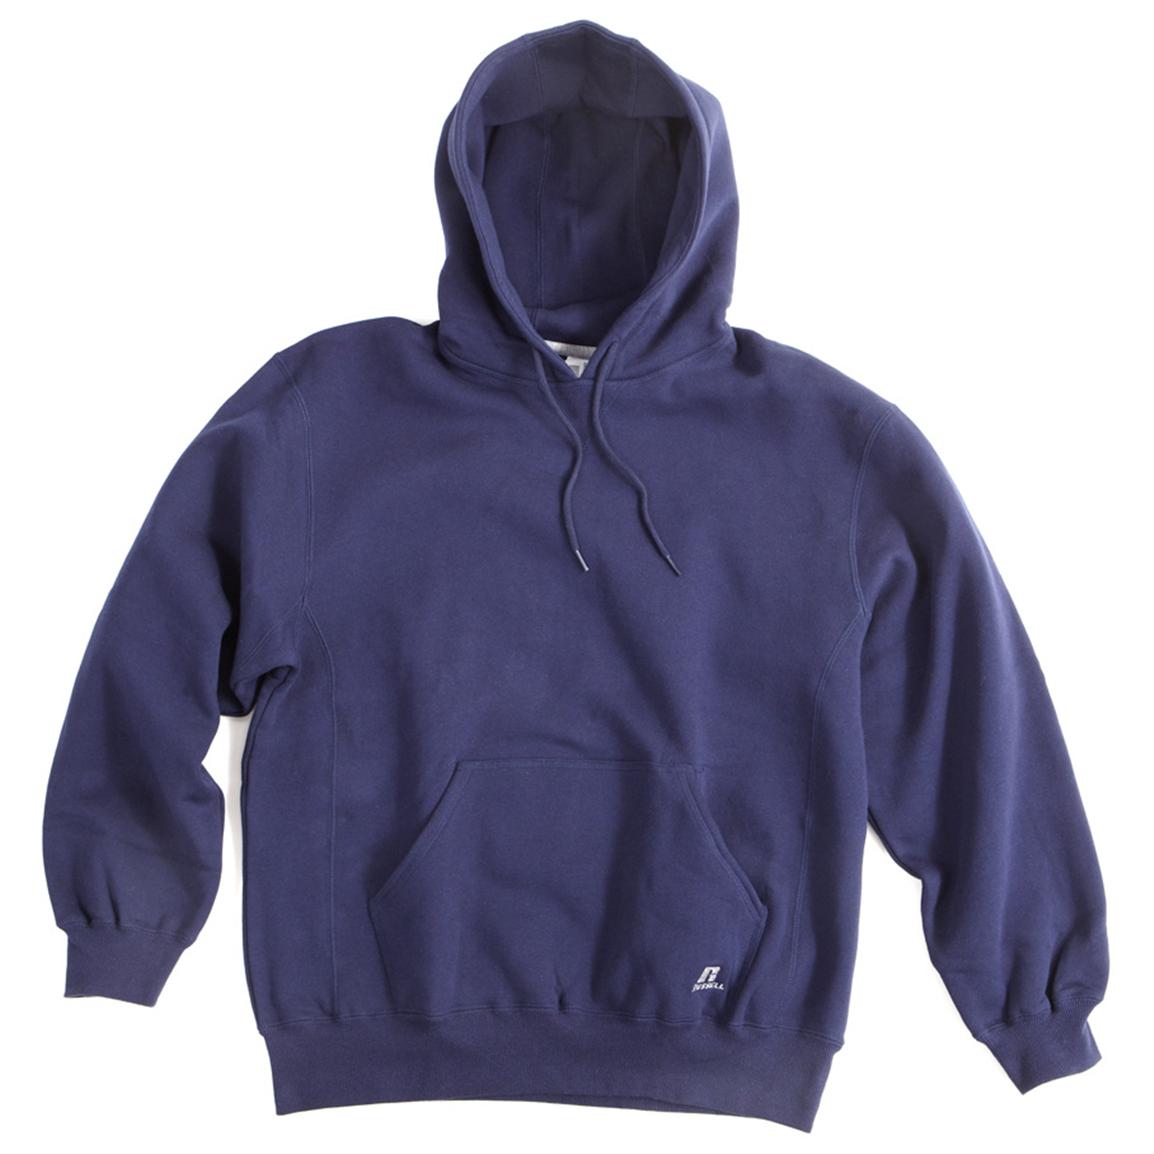 Russell Outdoors® Hooded Sweatshirt - 219993, Sweatshirts & Hoodies at ...